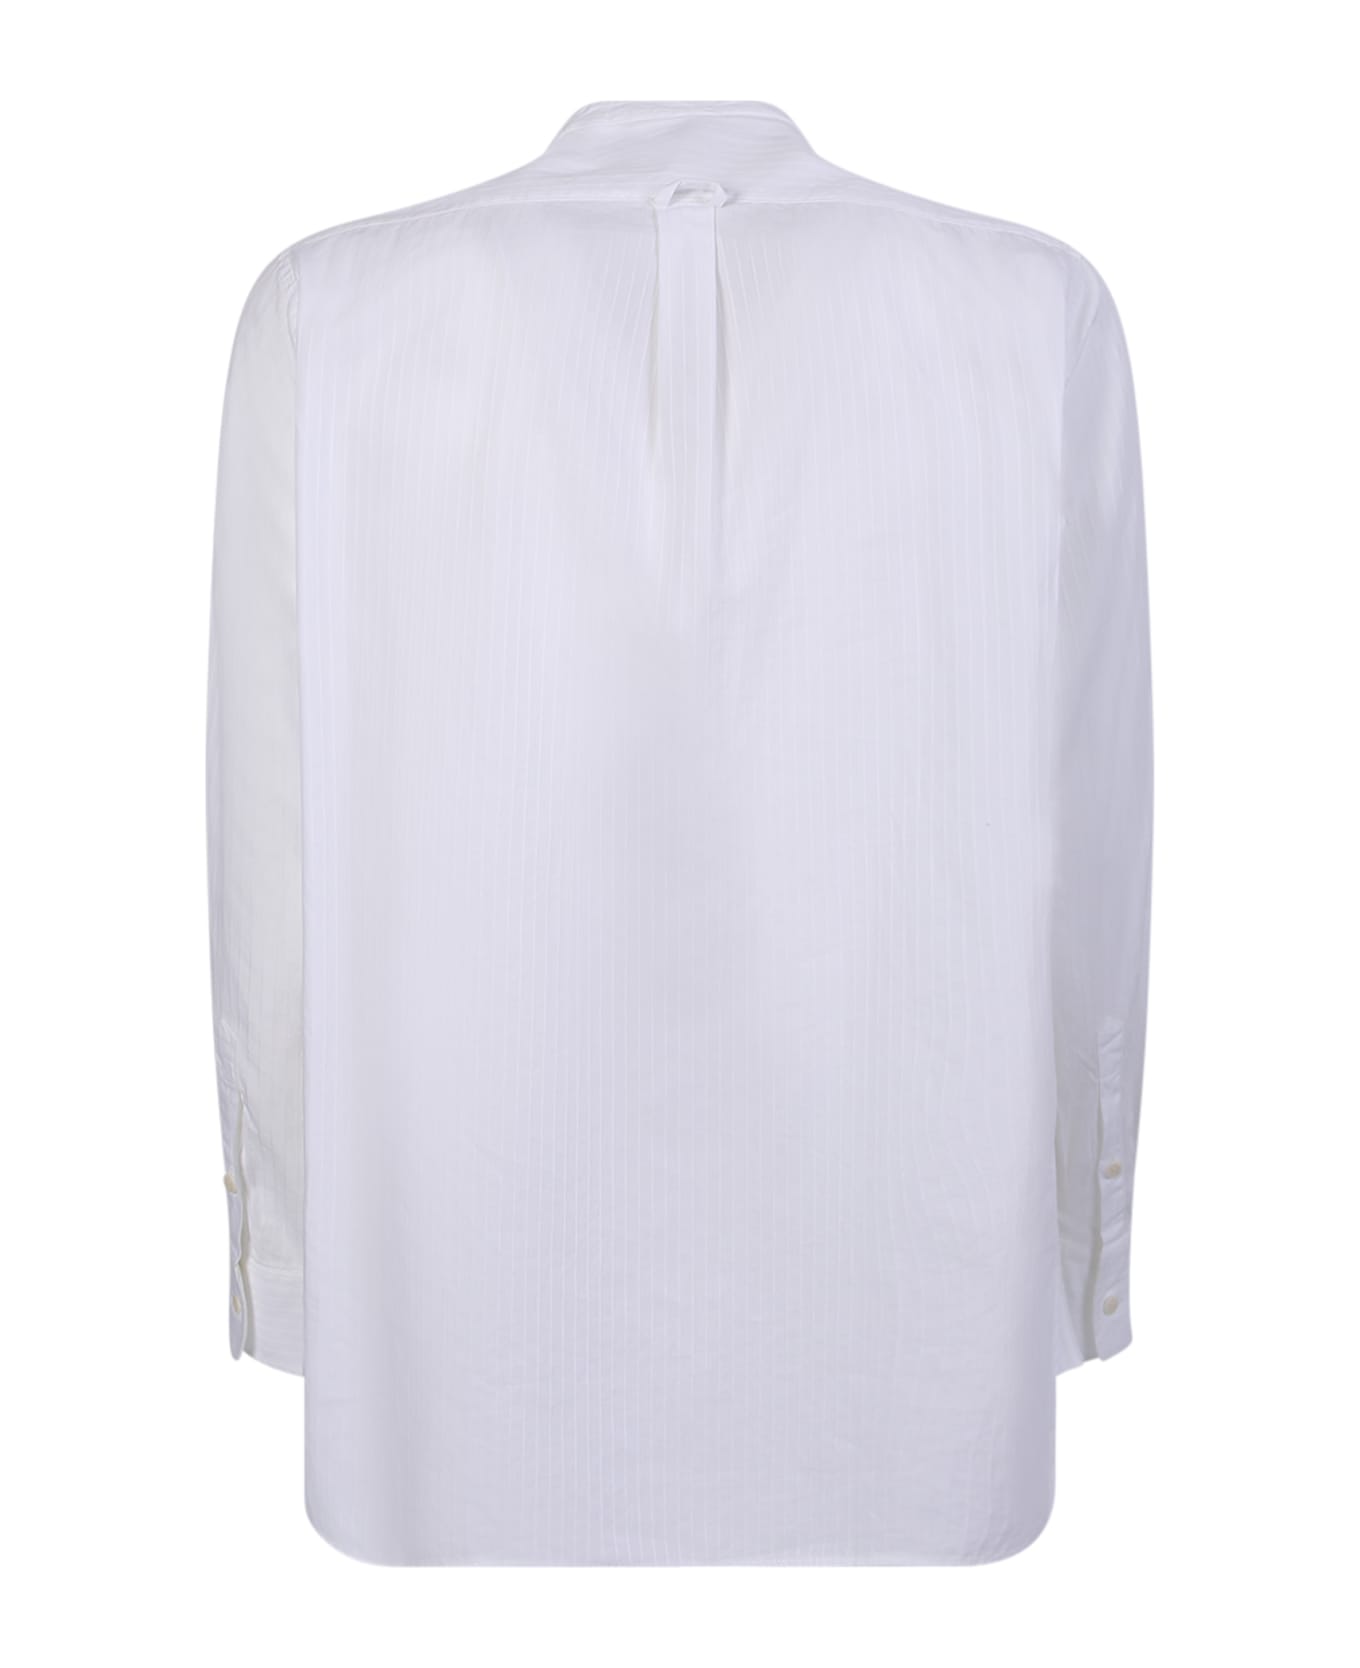 Original Vintage Style Korean Collar White Shirt - White シャツ